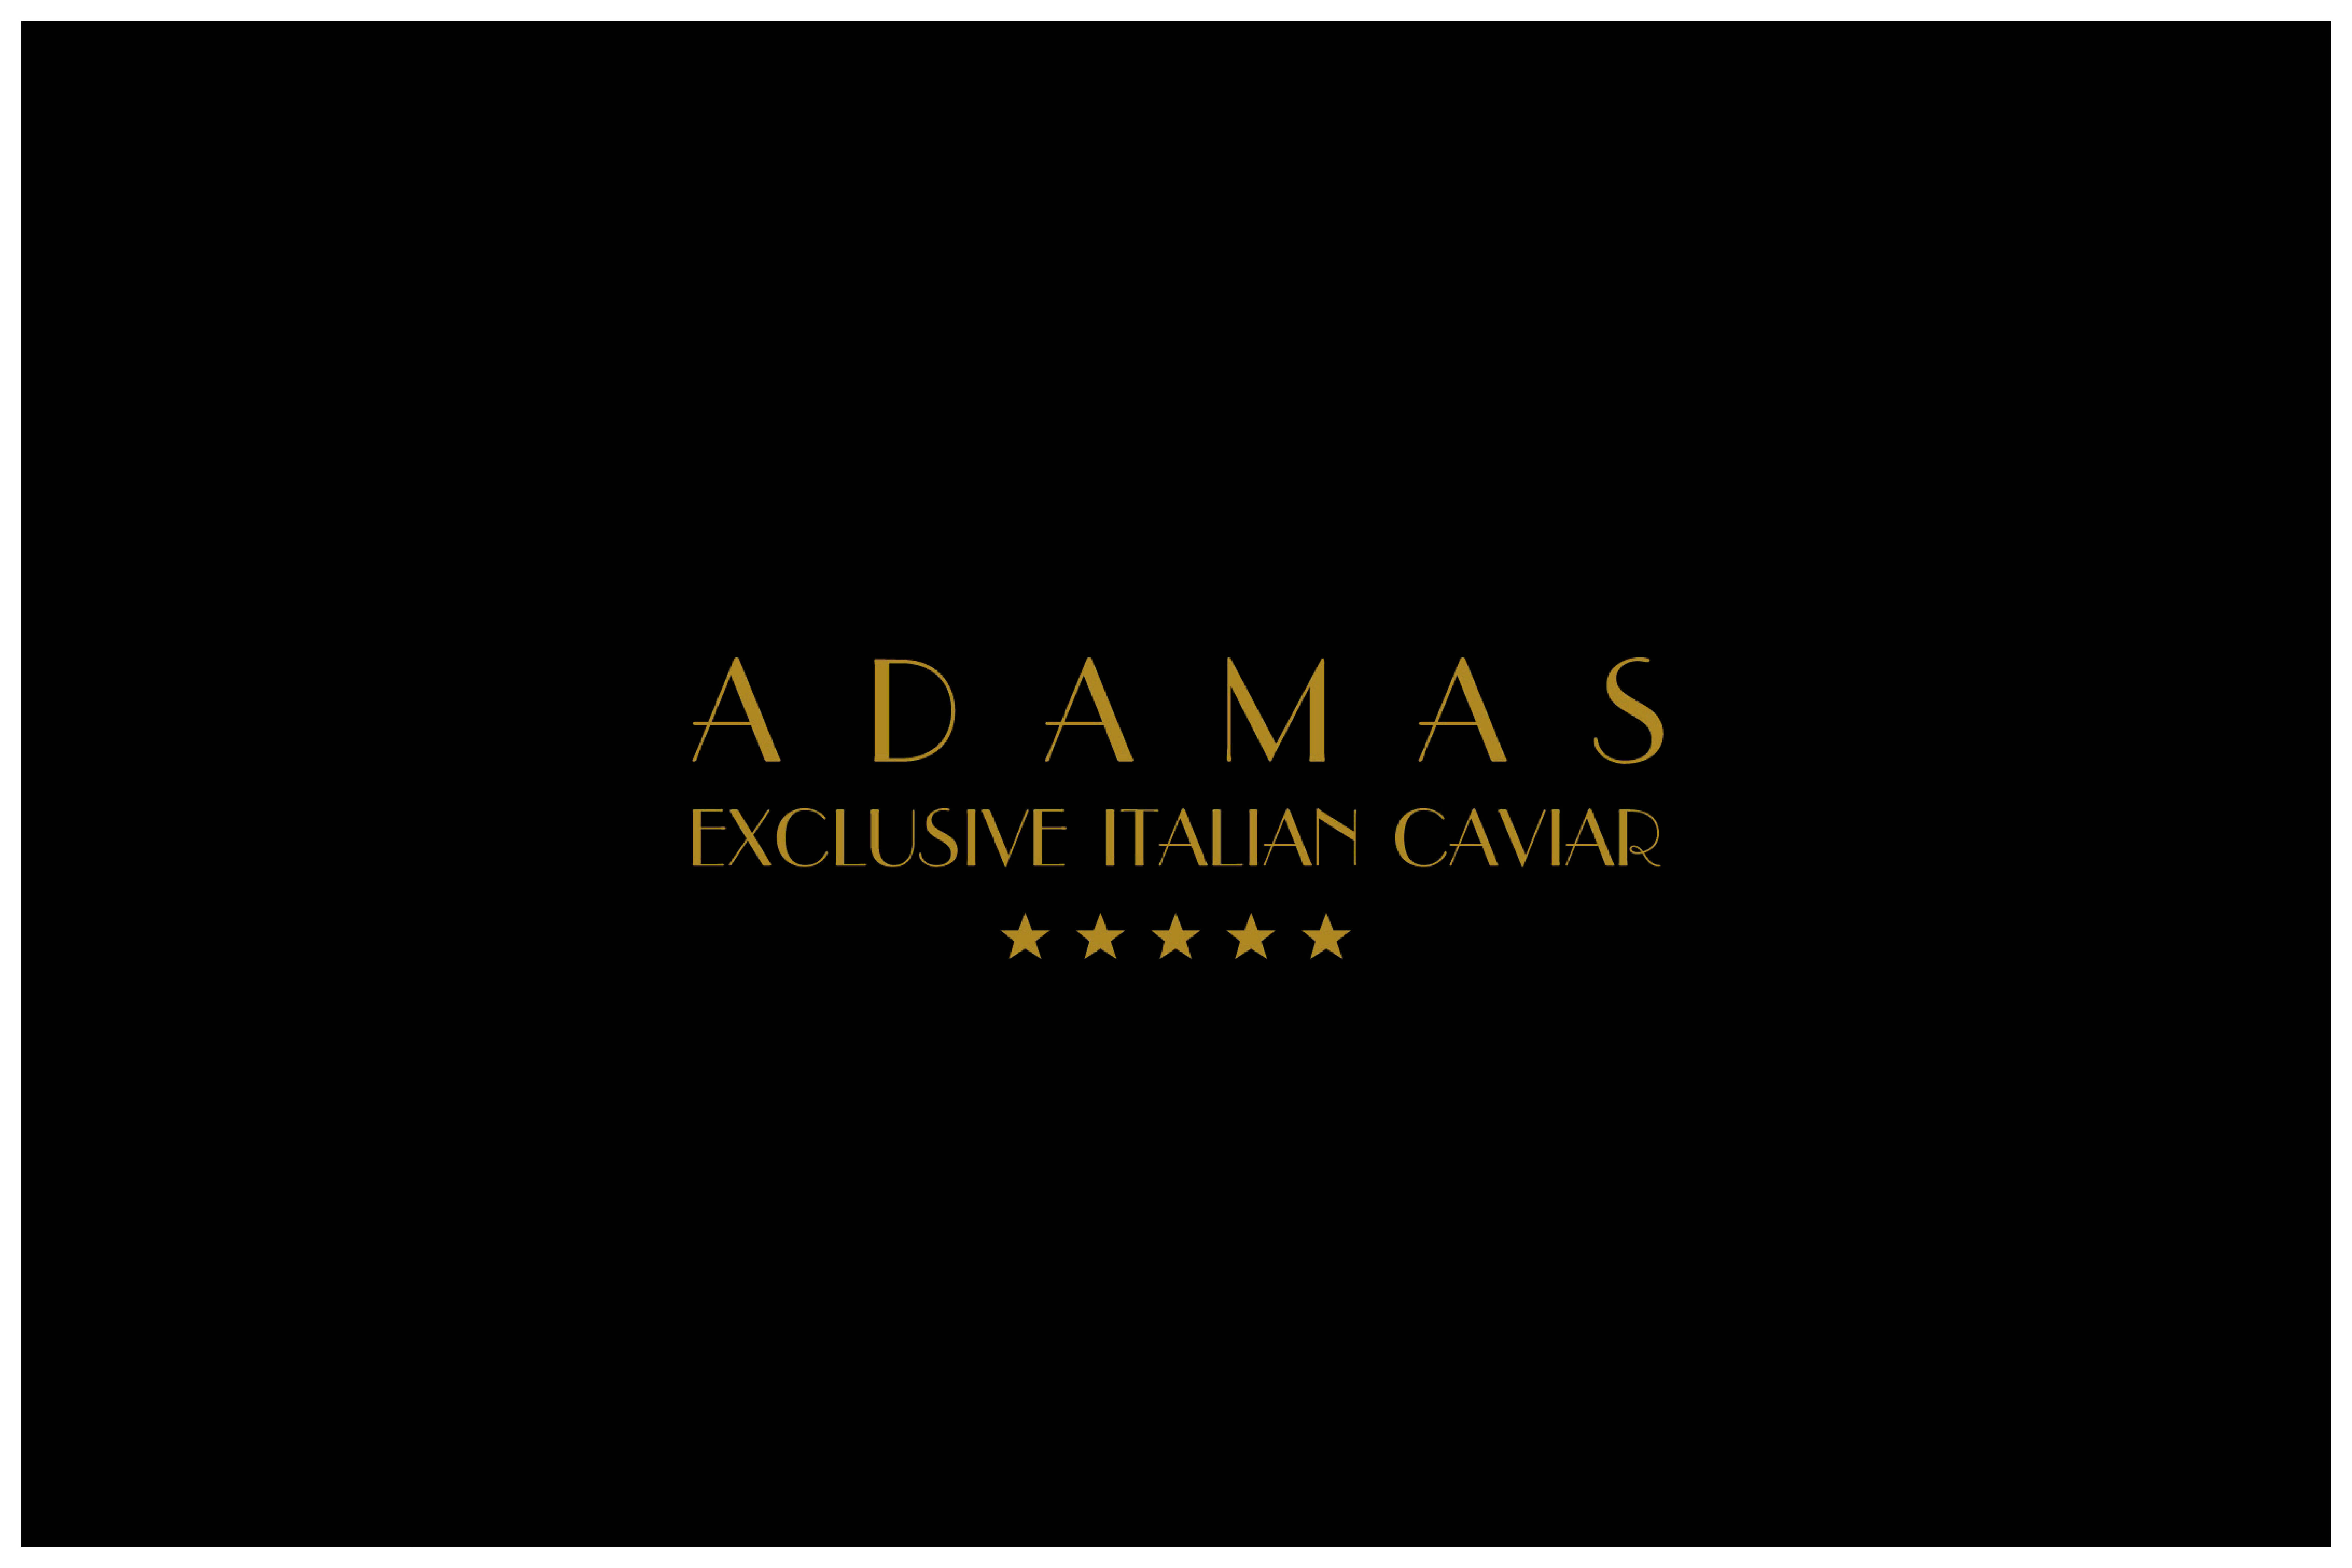 Mezze maniche and Black Adamas Caviar